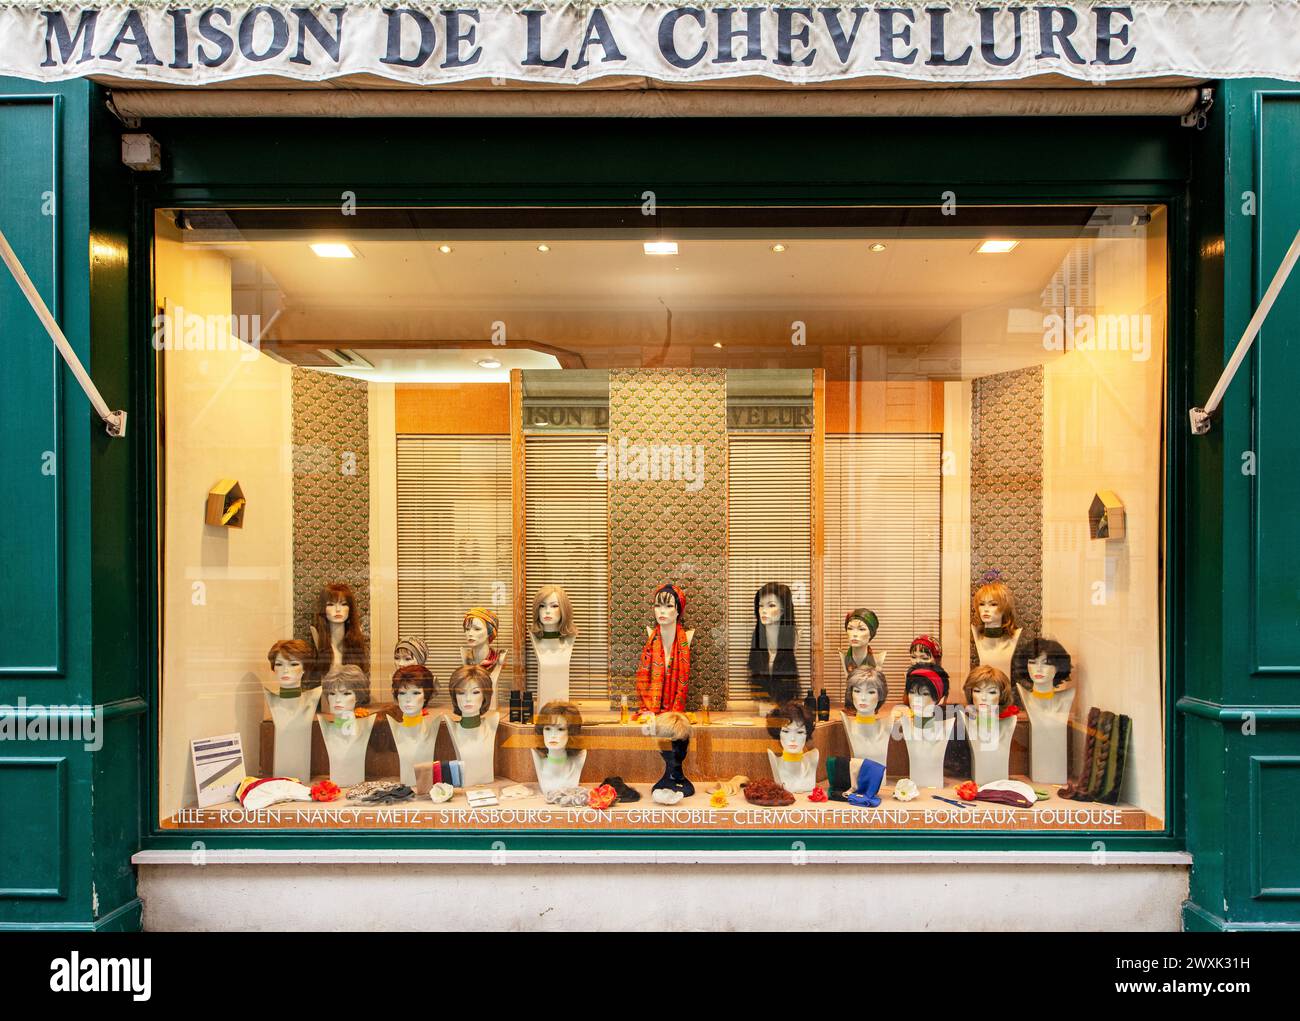 Paris, Frankreich; Maison de la Chevelure, 77 Rue de Vaugirard. Ein Fachgeschäft, in dem hochwertige Perücken und Haarteile verkauft werden. Stockfoto